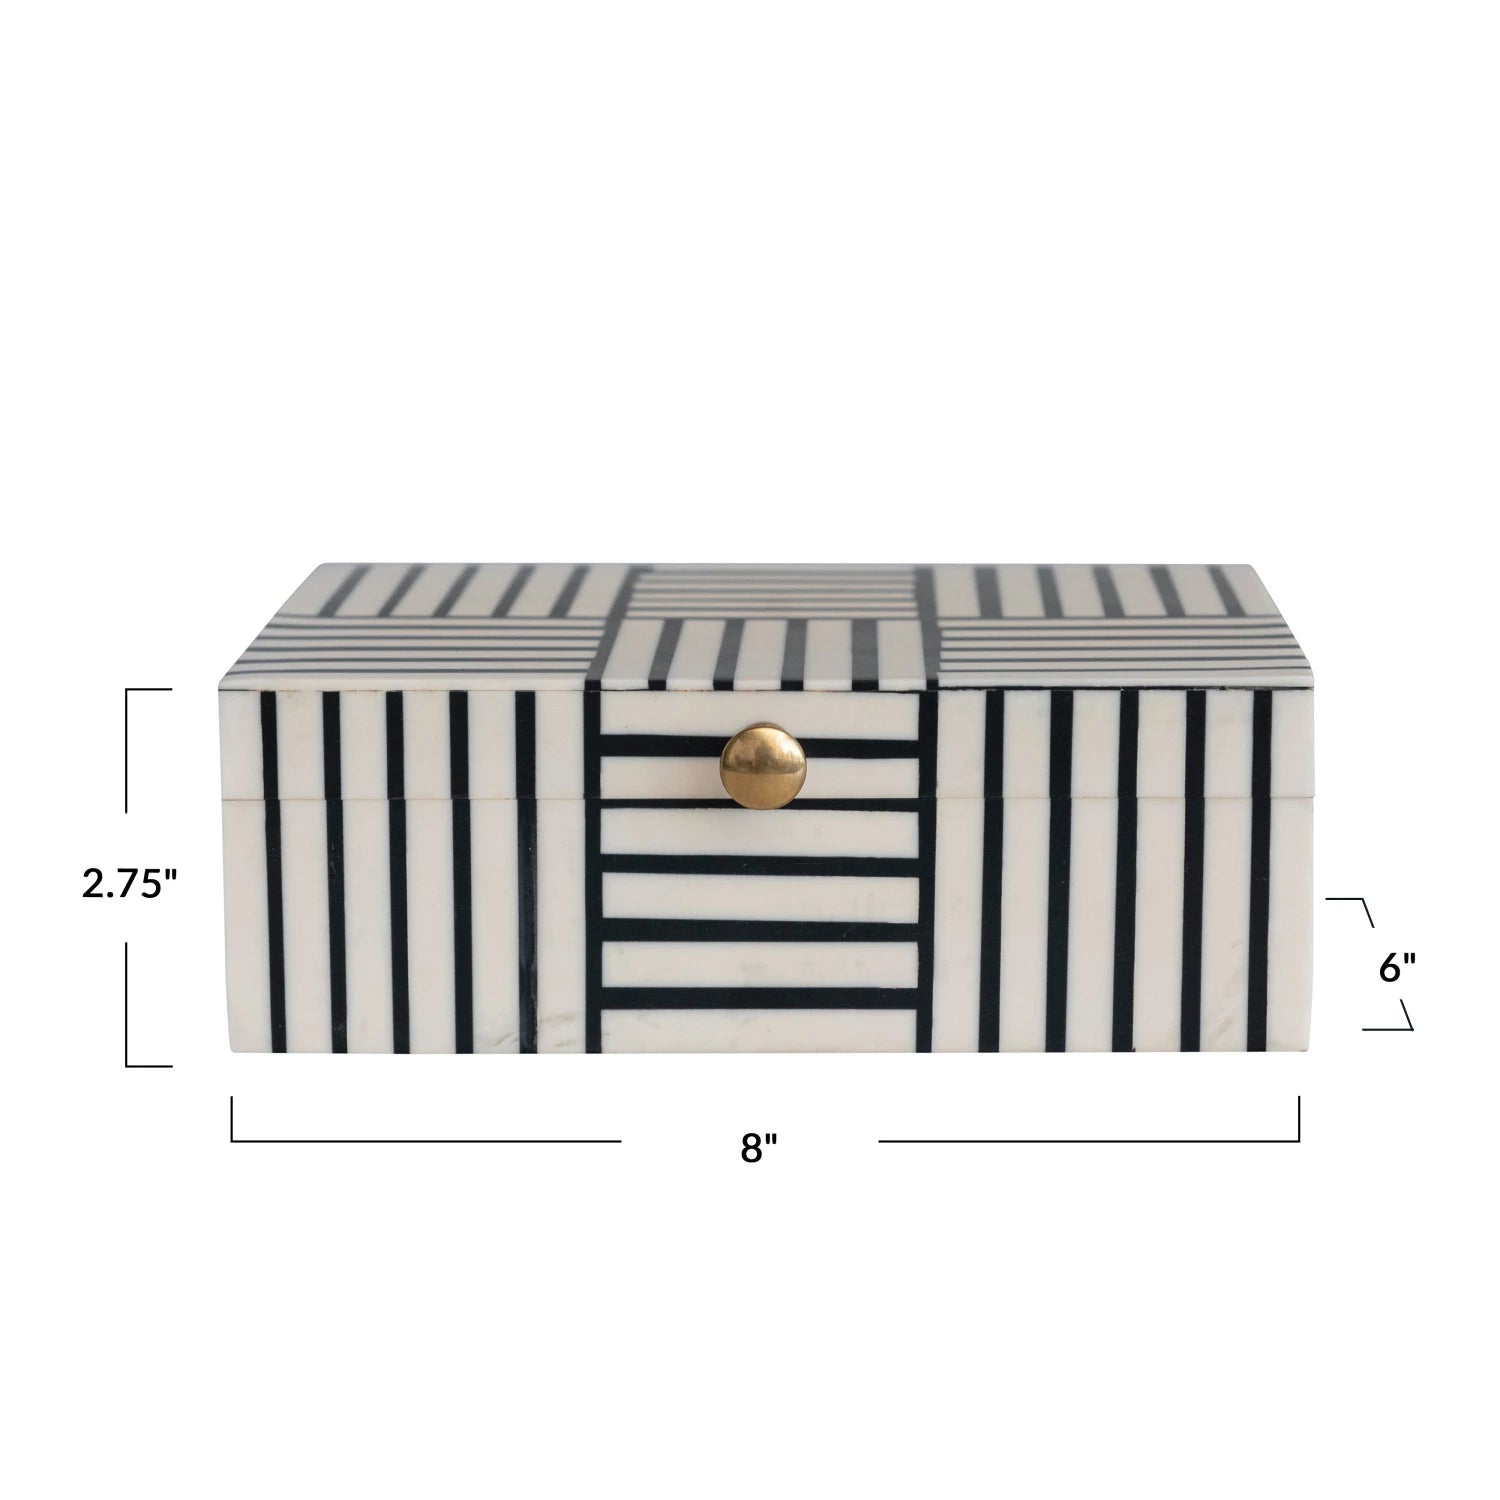 Black & White Resin Box w/ Striped Block Pattern & Gold Knob